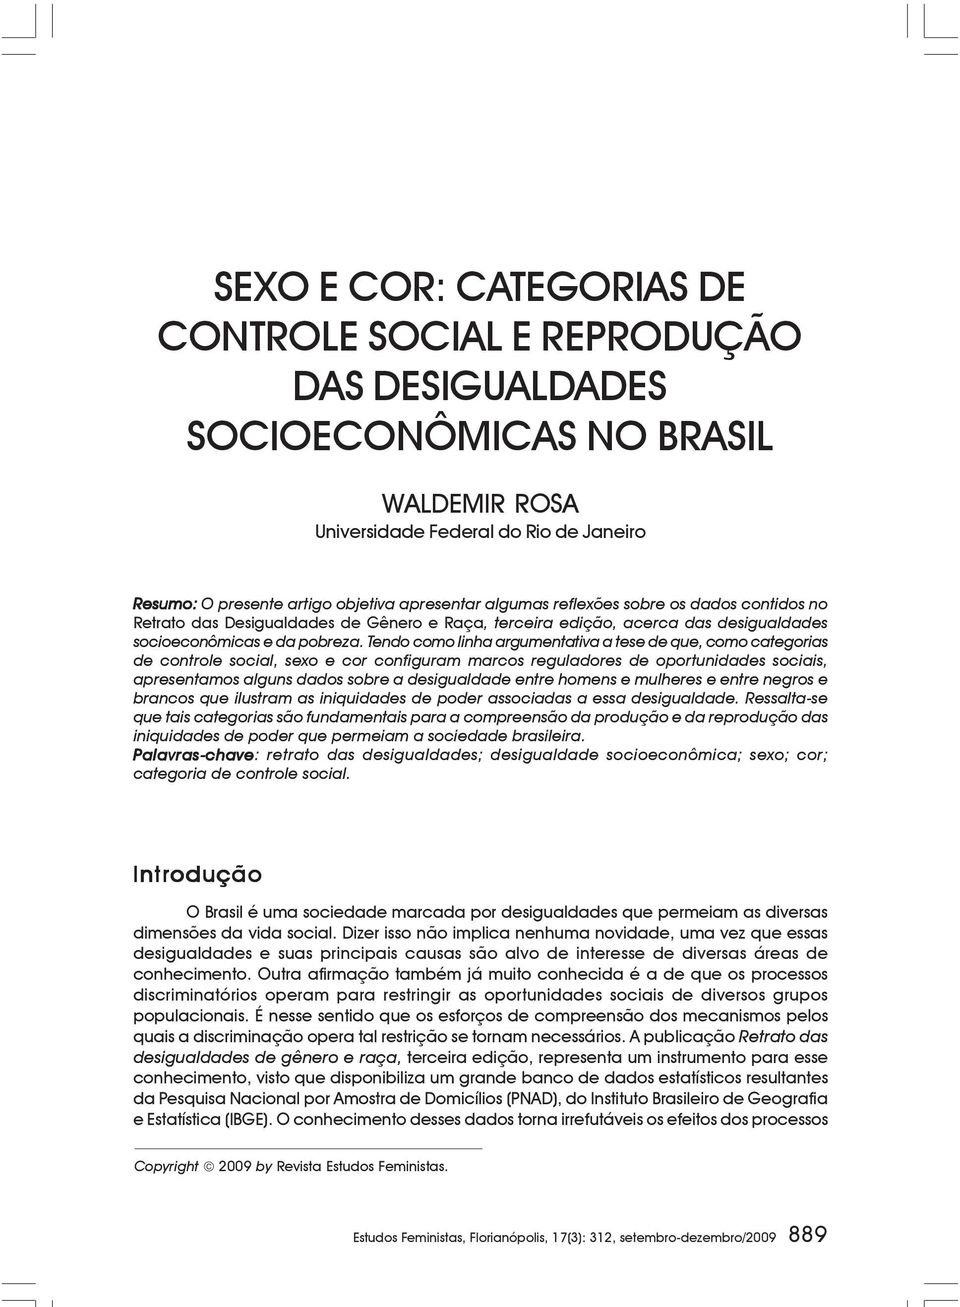 Tendo como linha argumentativa a tese de que, como categorias de controle social, sexo e cor configuram marcos reguladores de oportunidades sociais, apresentamos alguns dados sobre a desigualdade